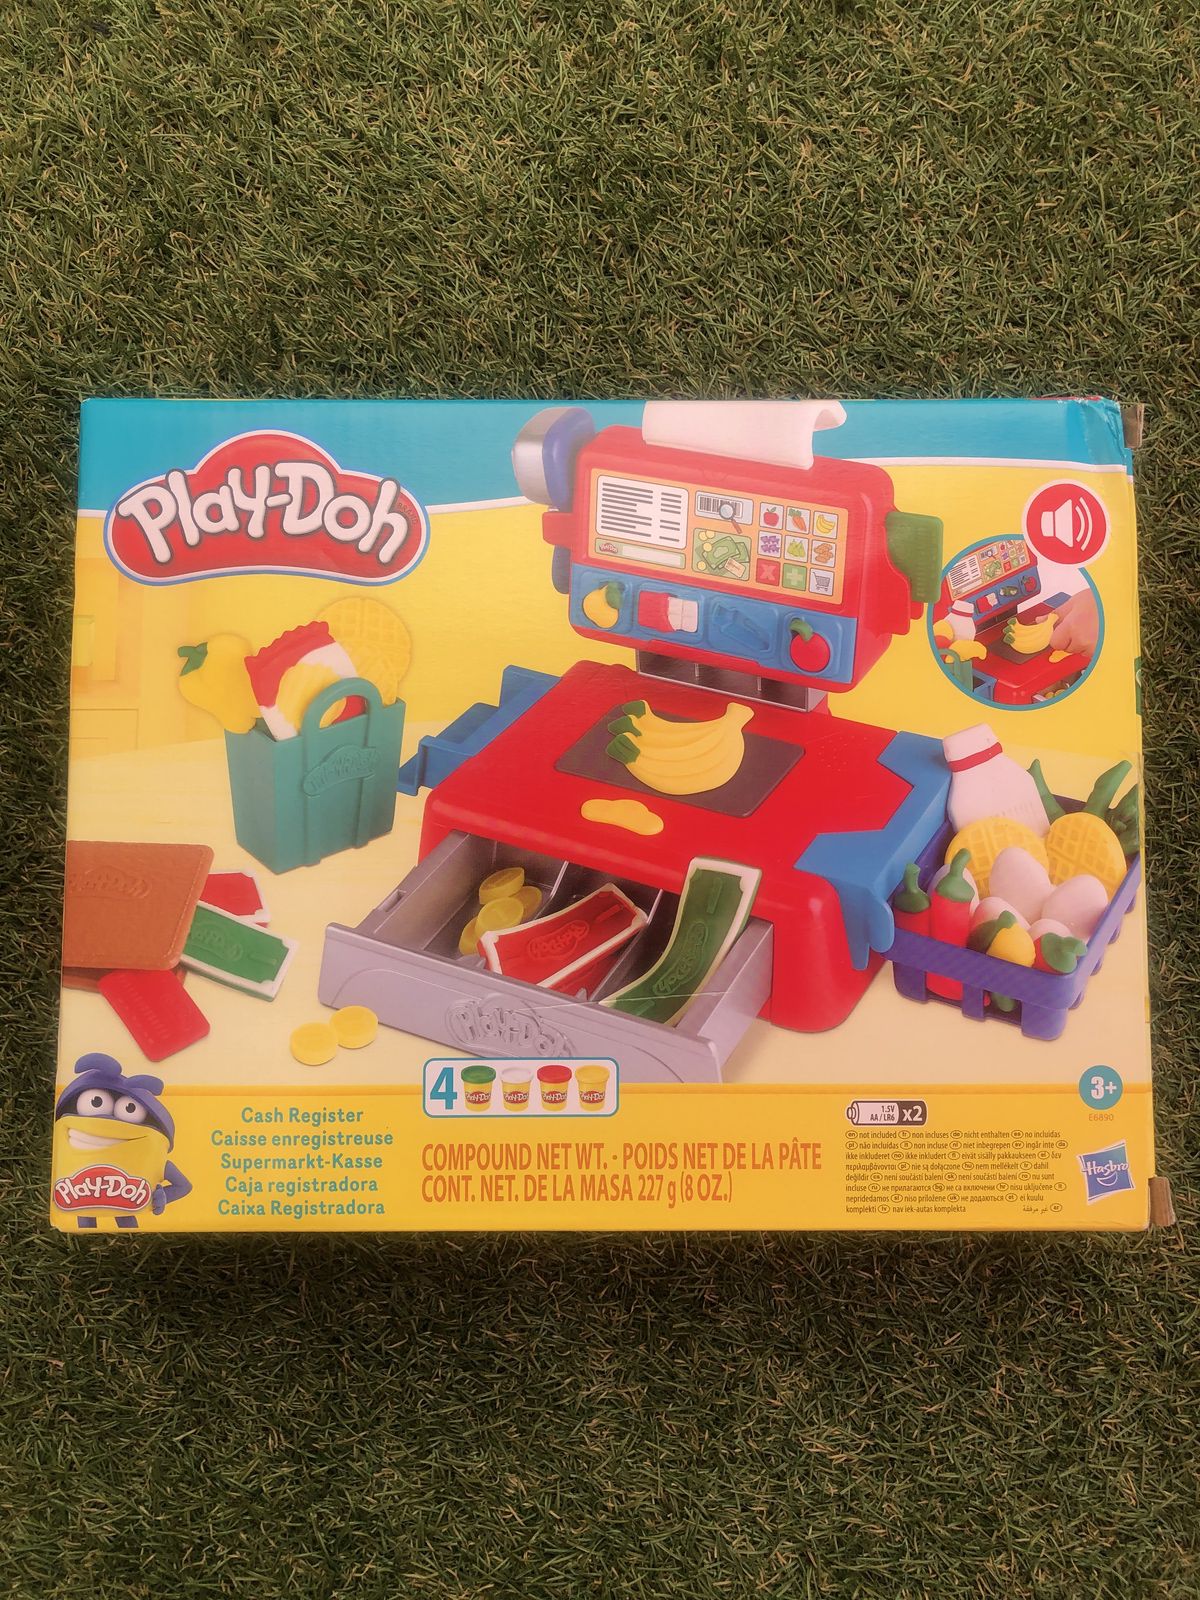 Play-Doh - La Caisse Enregistreuse